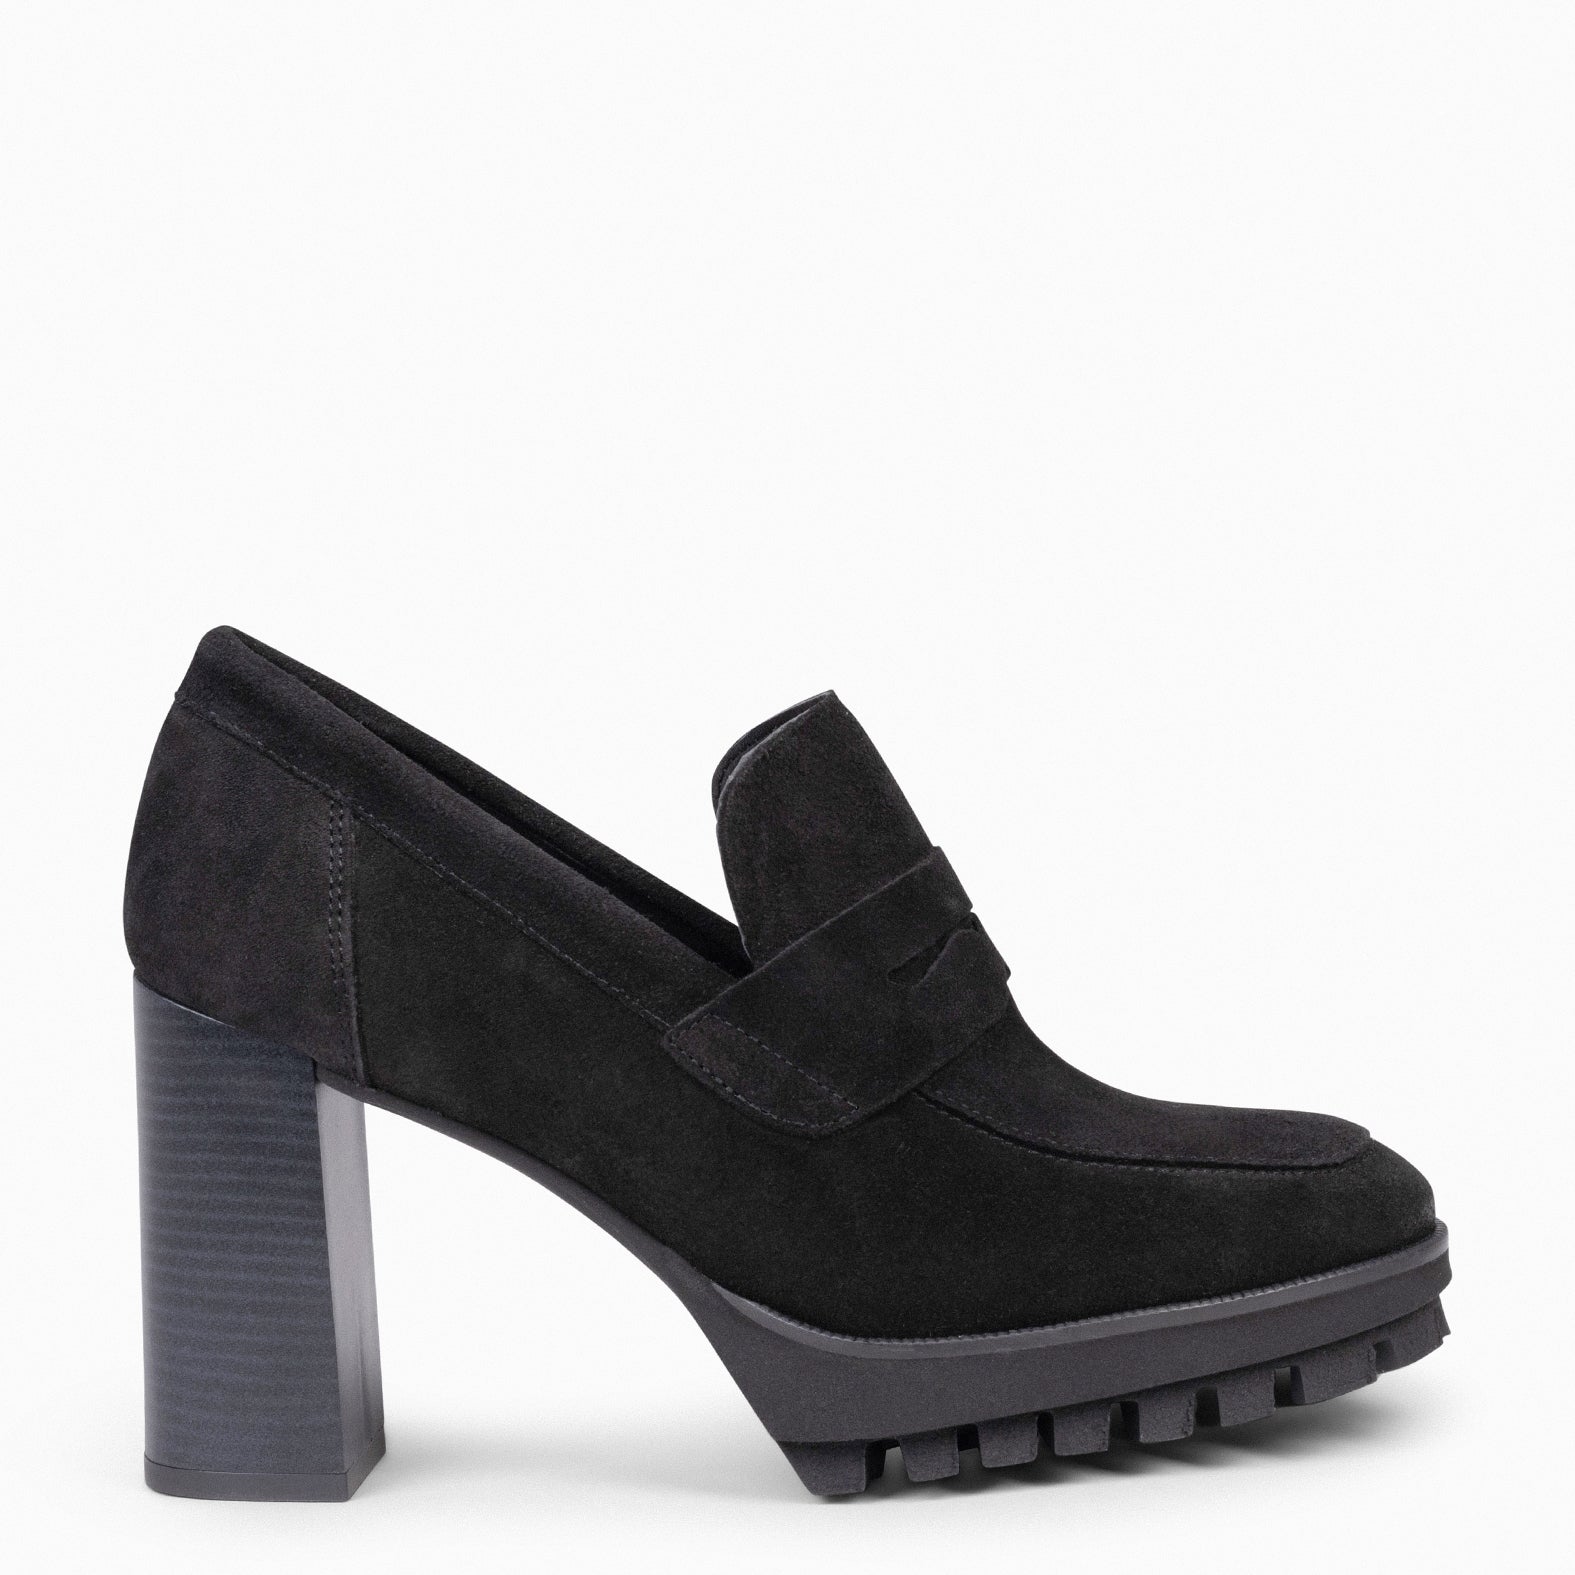 TREND – BLACK high heel moccasins with platform 